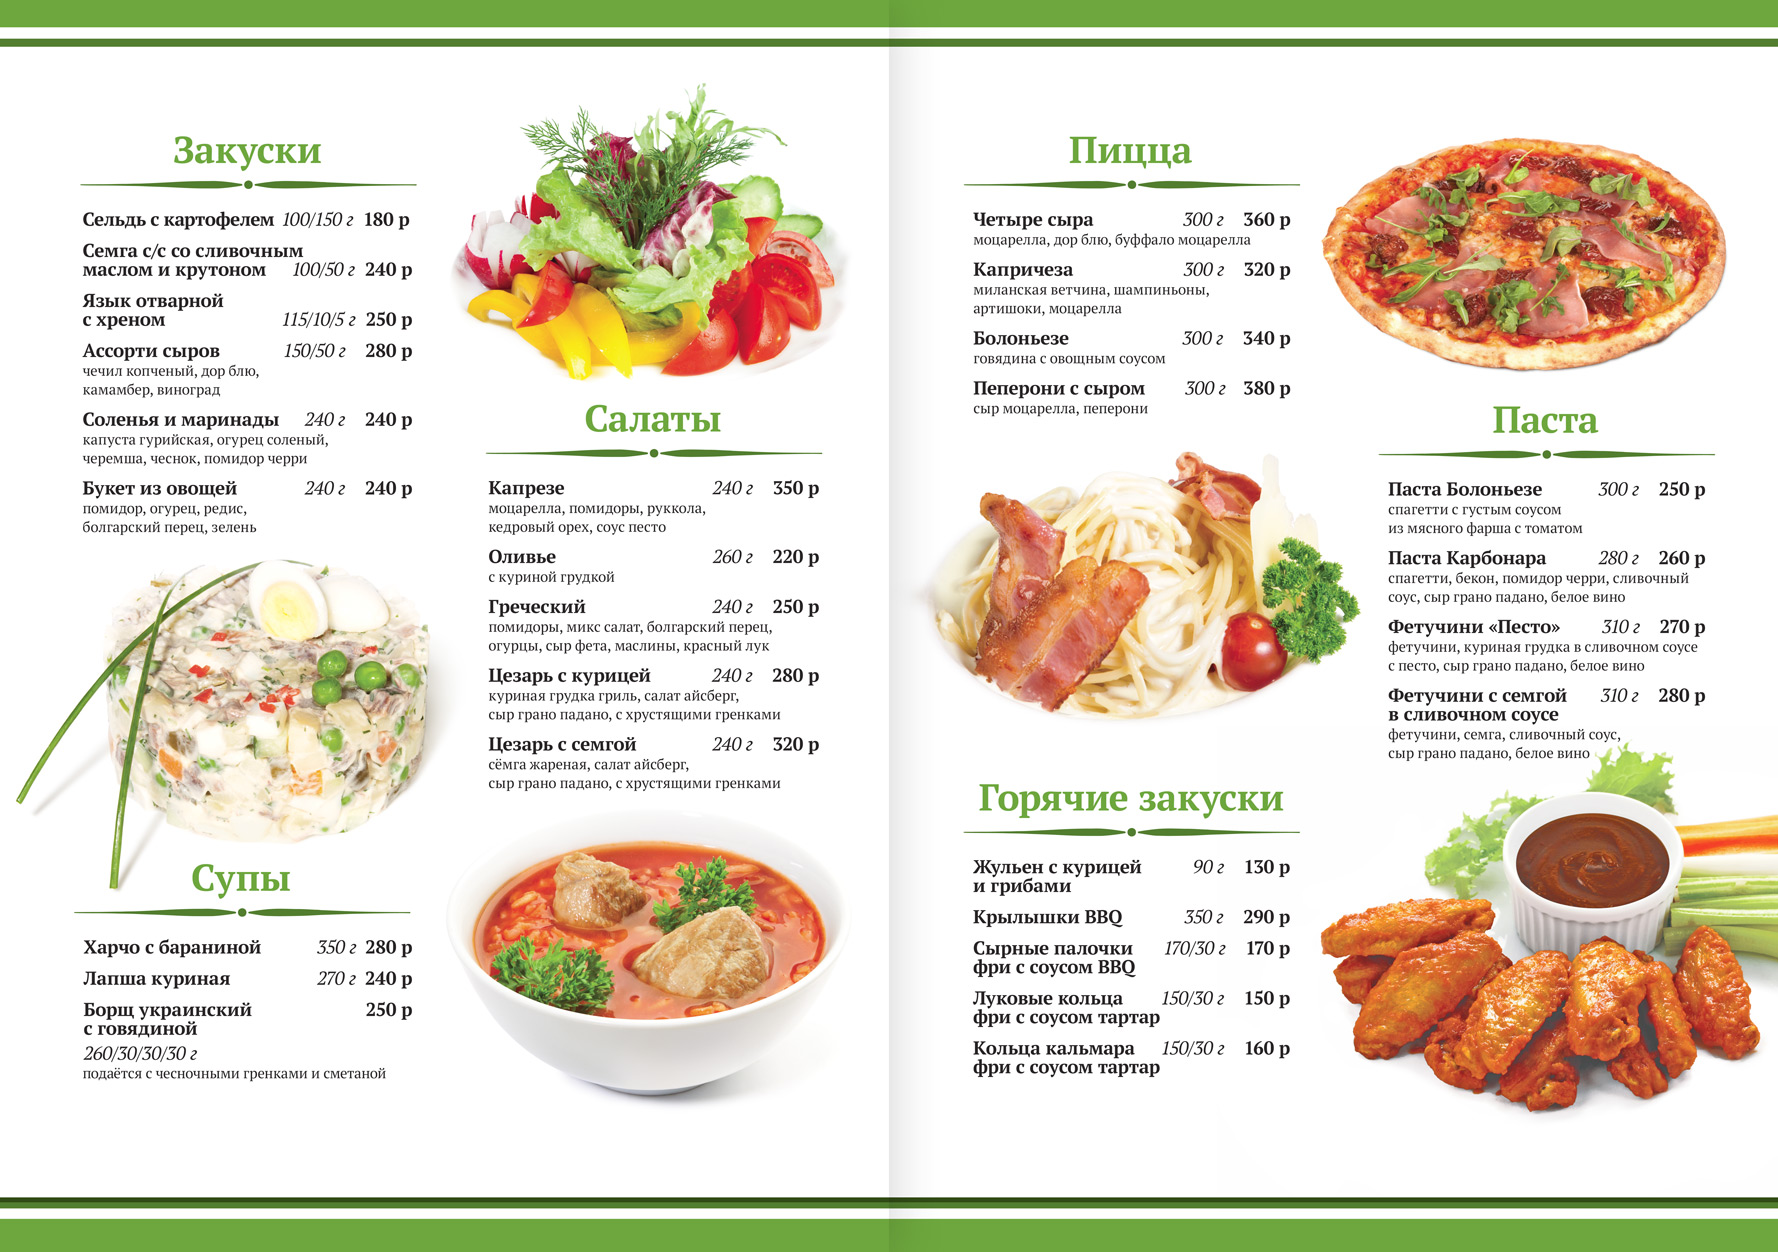 Ресторан русской кухни «Шустов»